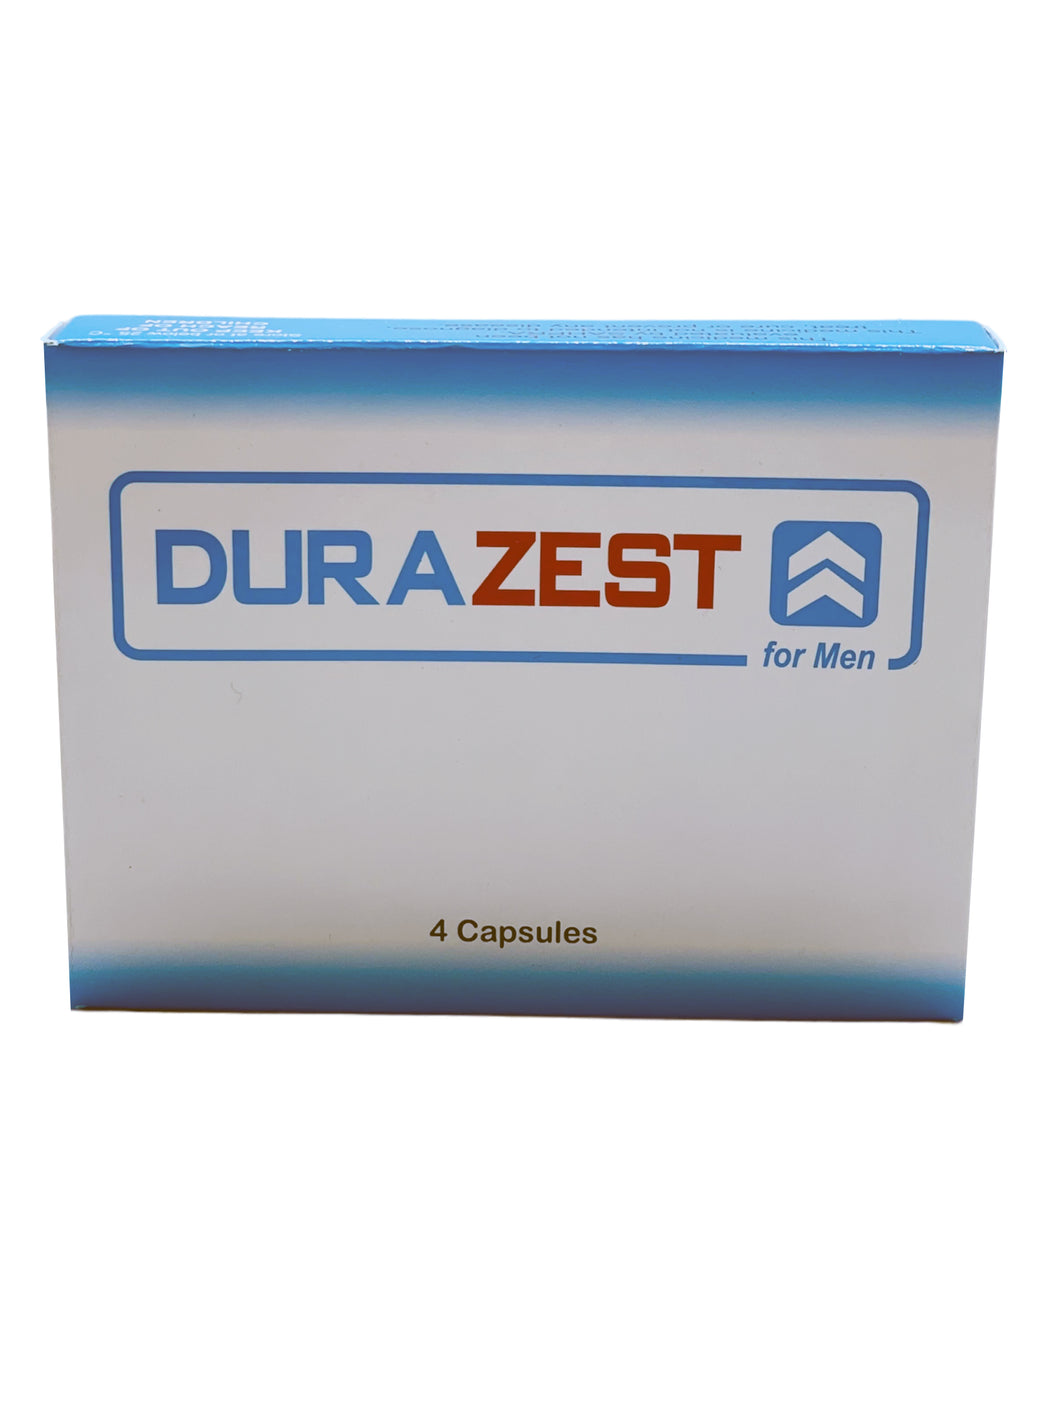 DuraZest for Men - 4 Capsules